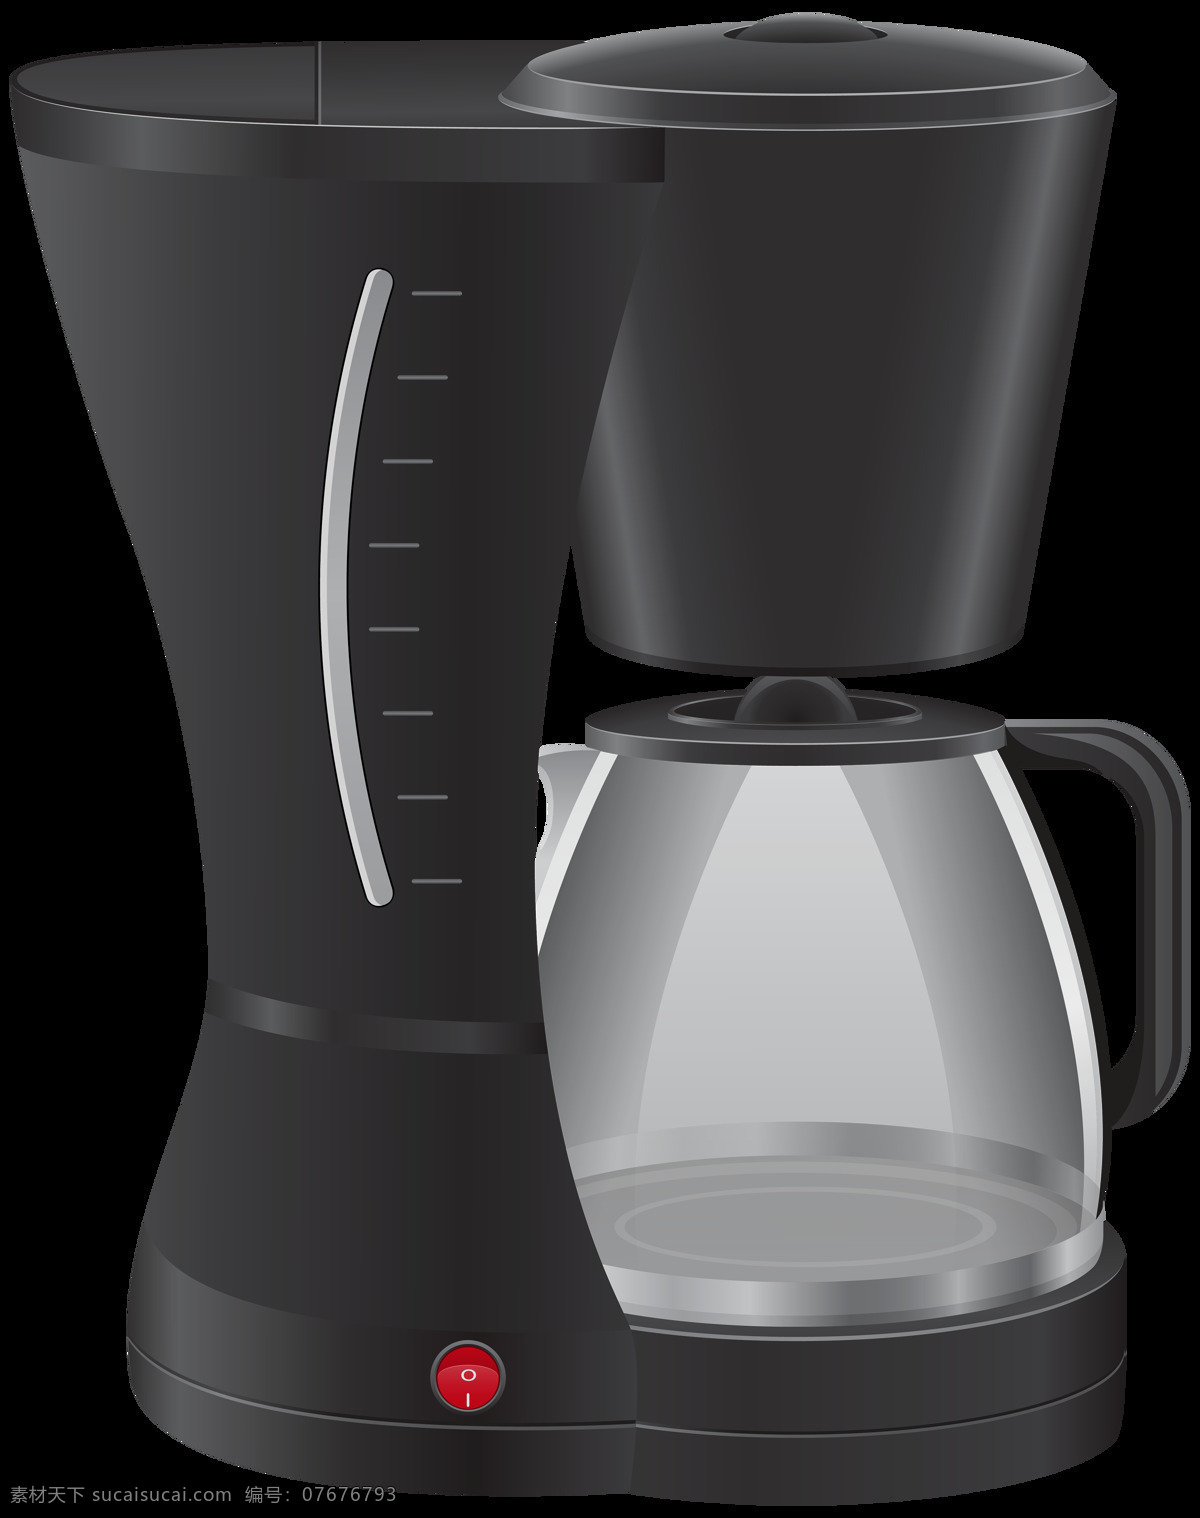 家用 咖啡机 免 抠 透明 图 层 t3咖啡机 煮咖啡机 手工咖啡机 飞利浦咖啡机 胶囊式咖啡机 咖啡机素材 欧式咖啡机 自动 贩卖 咖啡机图片 家用咖啡机